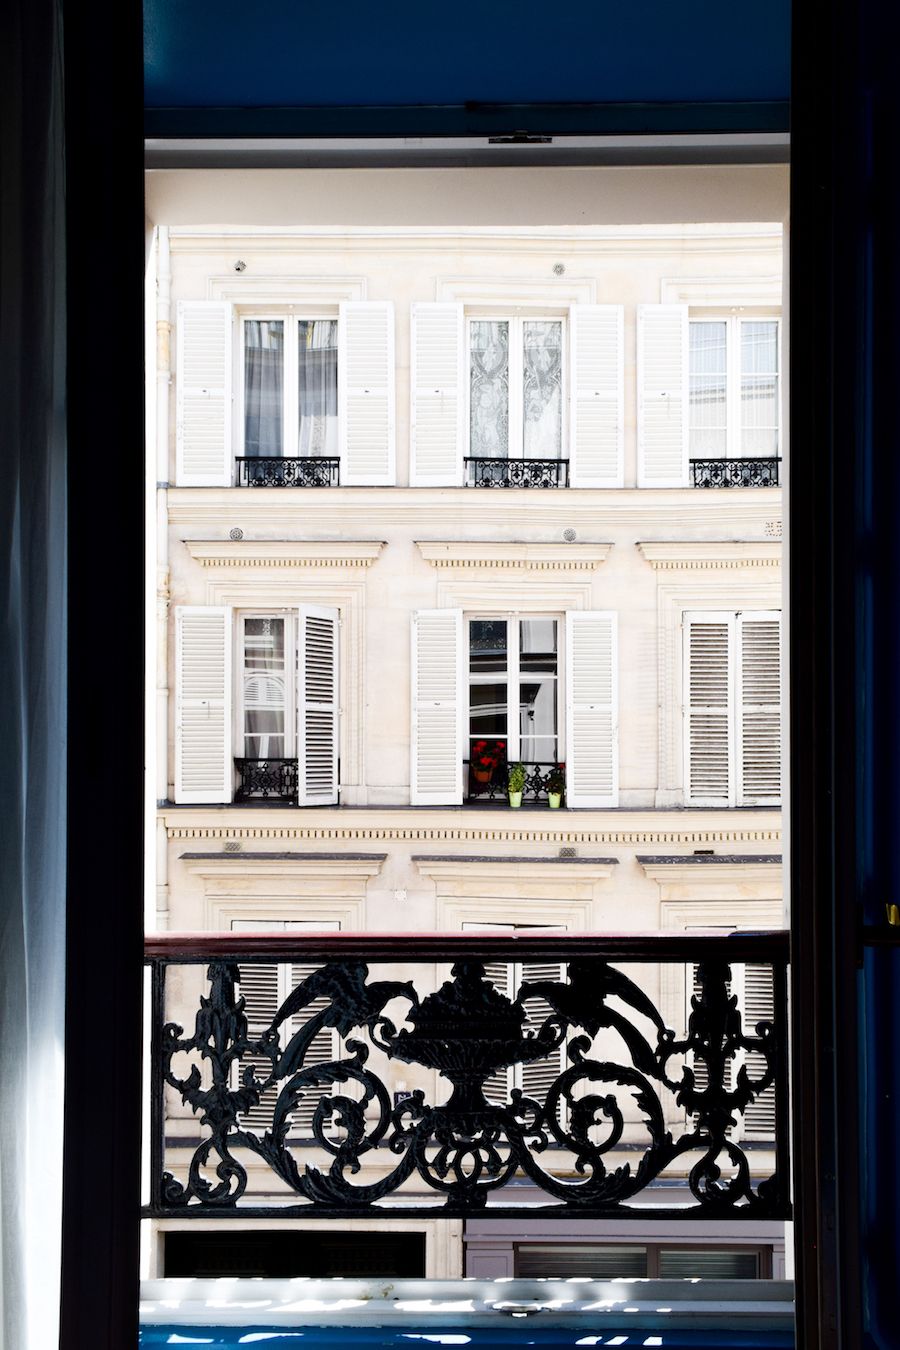 Hotel Grand Amour, Paris